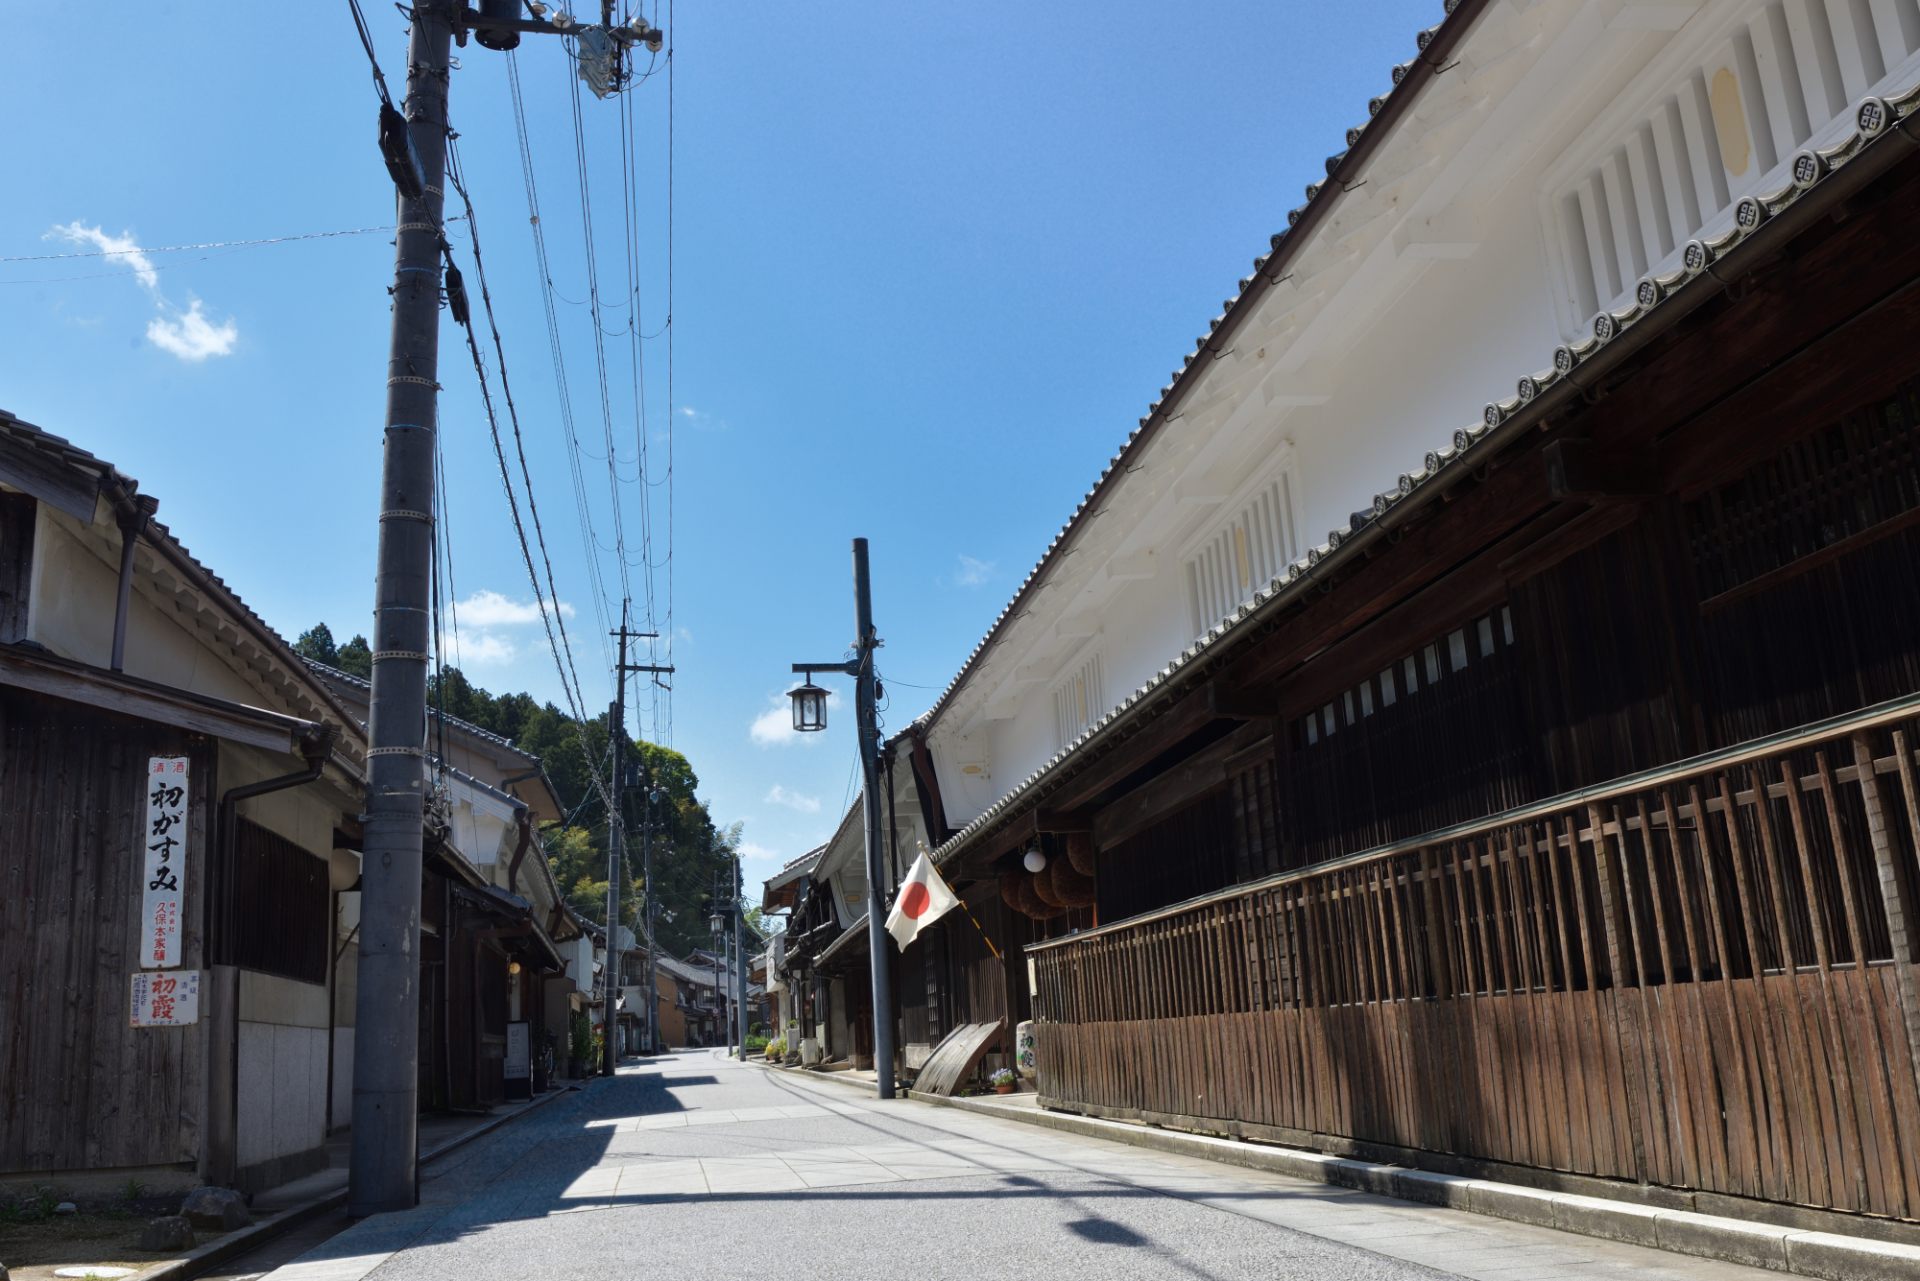 江戸〜明治時代の面影を残す町家が軒を連ねます。